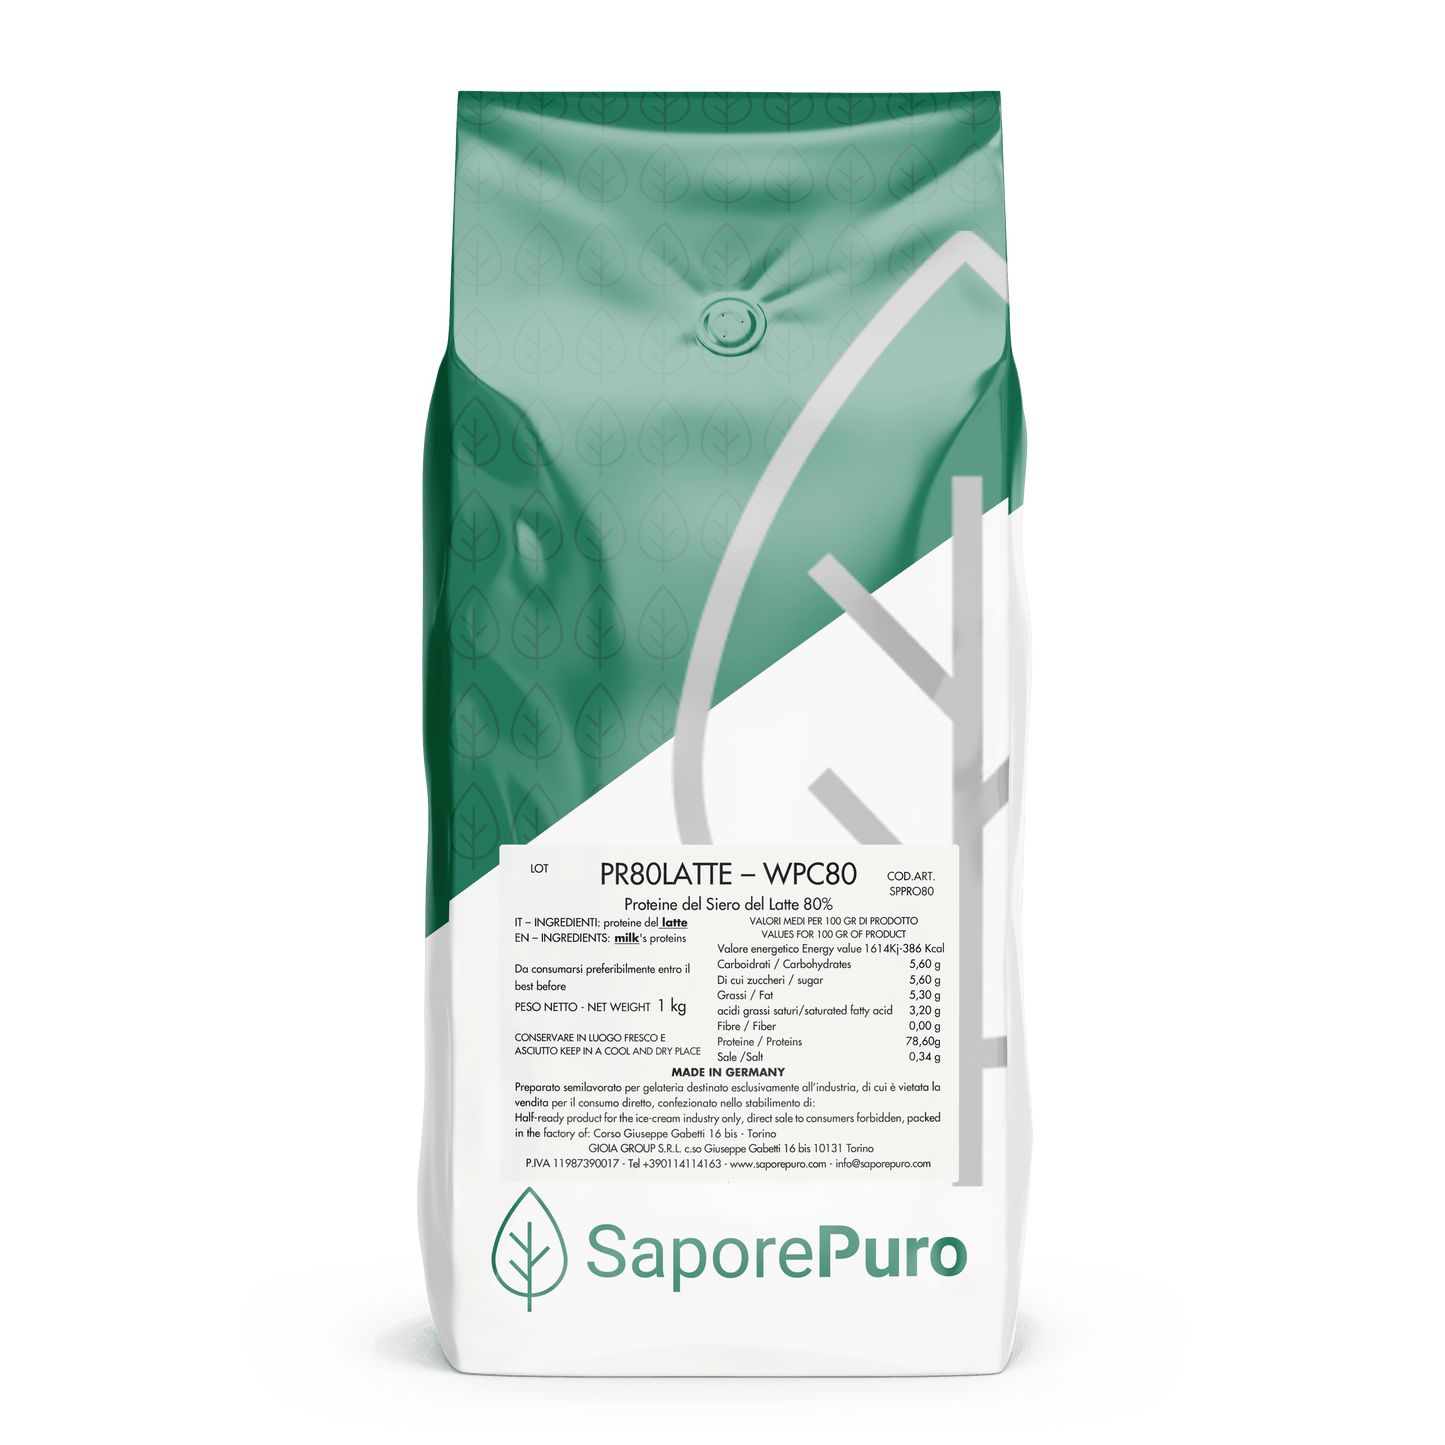 Proteine del Siero del Latte - WPC80 - Whey Protein Concentrate 80% - SaporePuro - 1kg